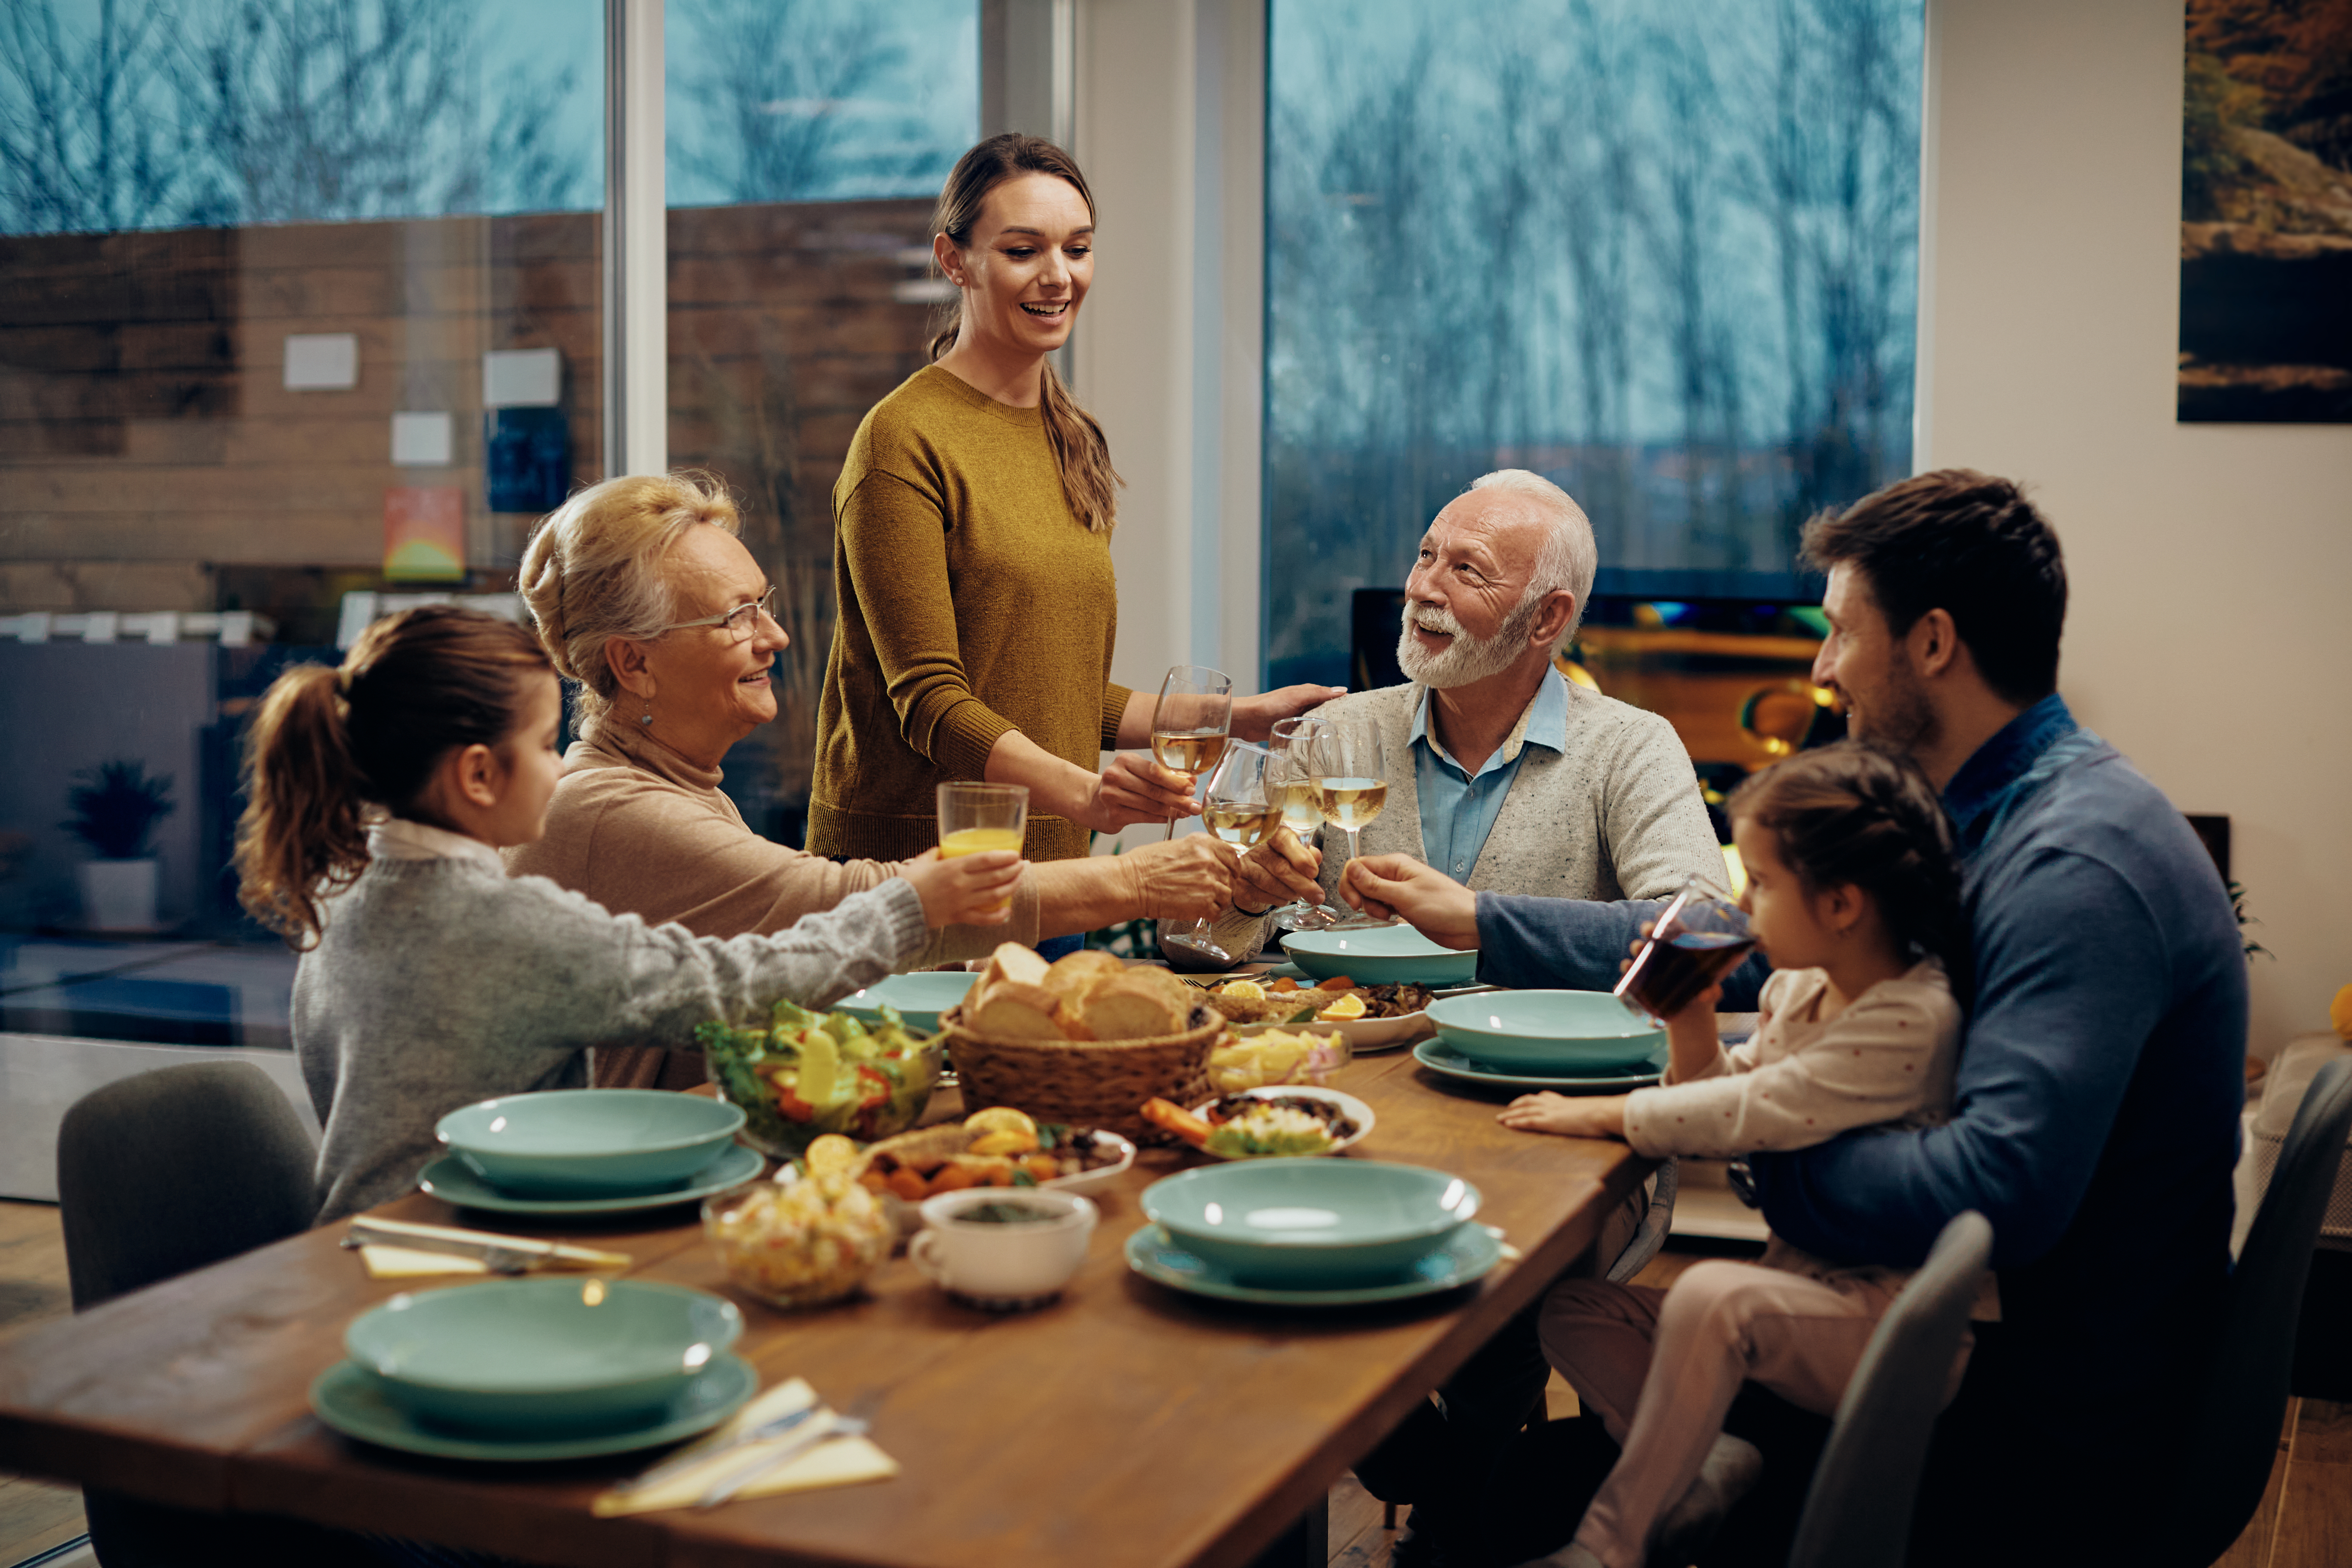 Una familia extendida feliz brindando mientras almuerzan juntos en un comedor. | Foto: Shutterstock